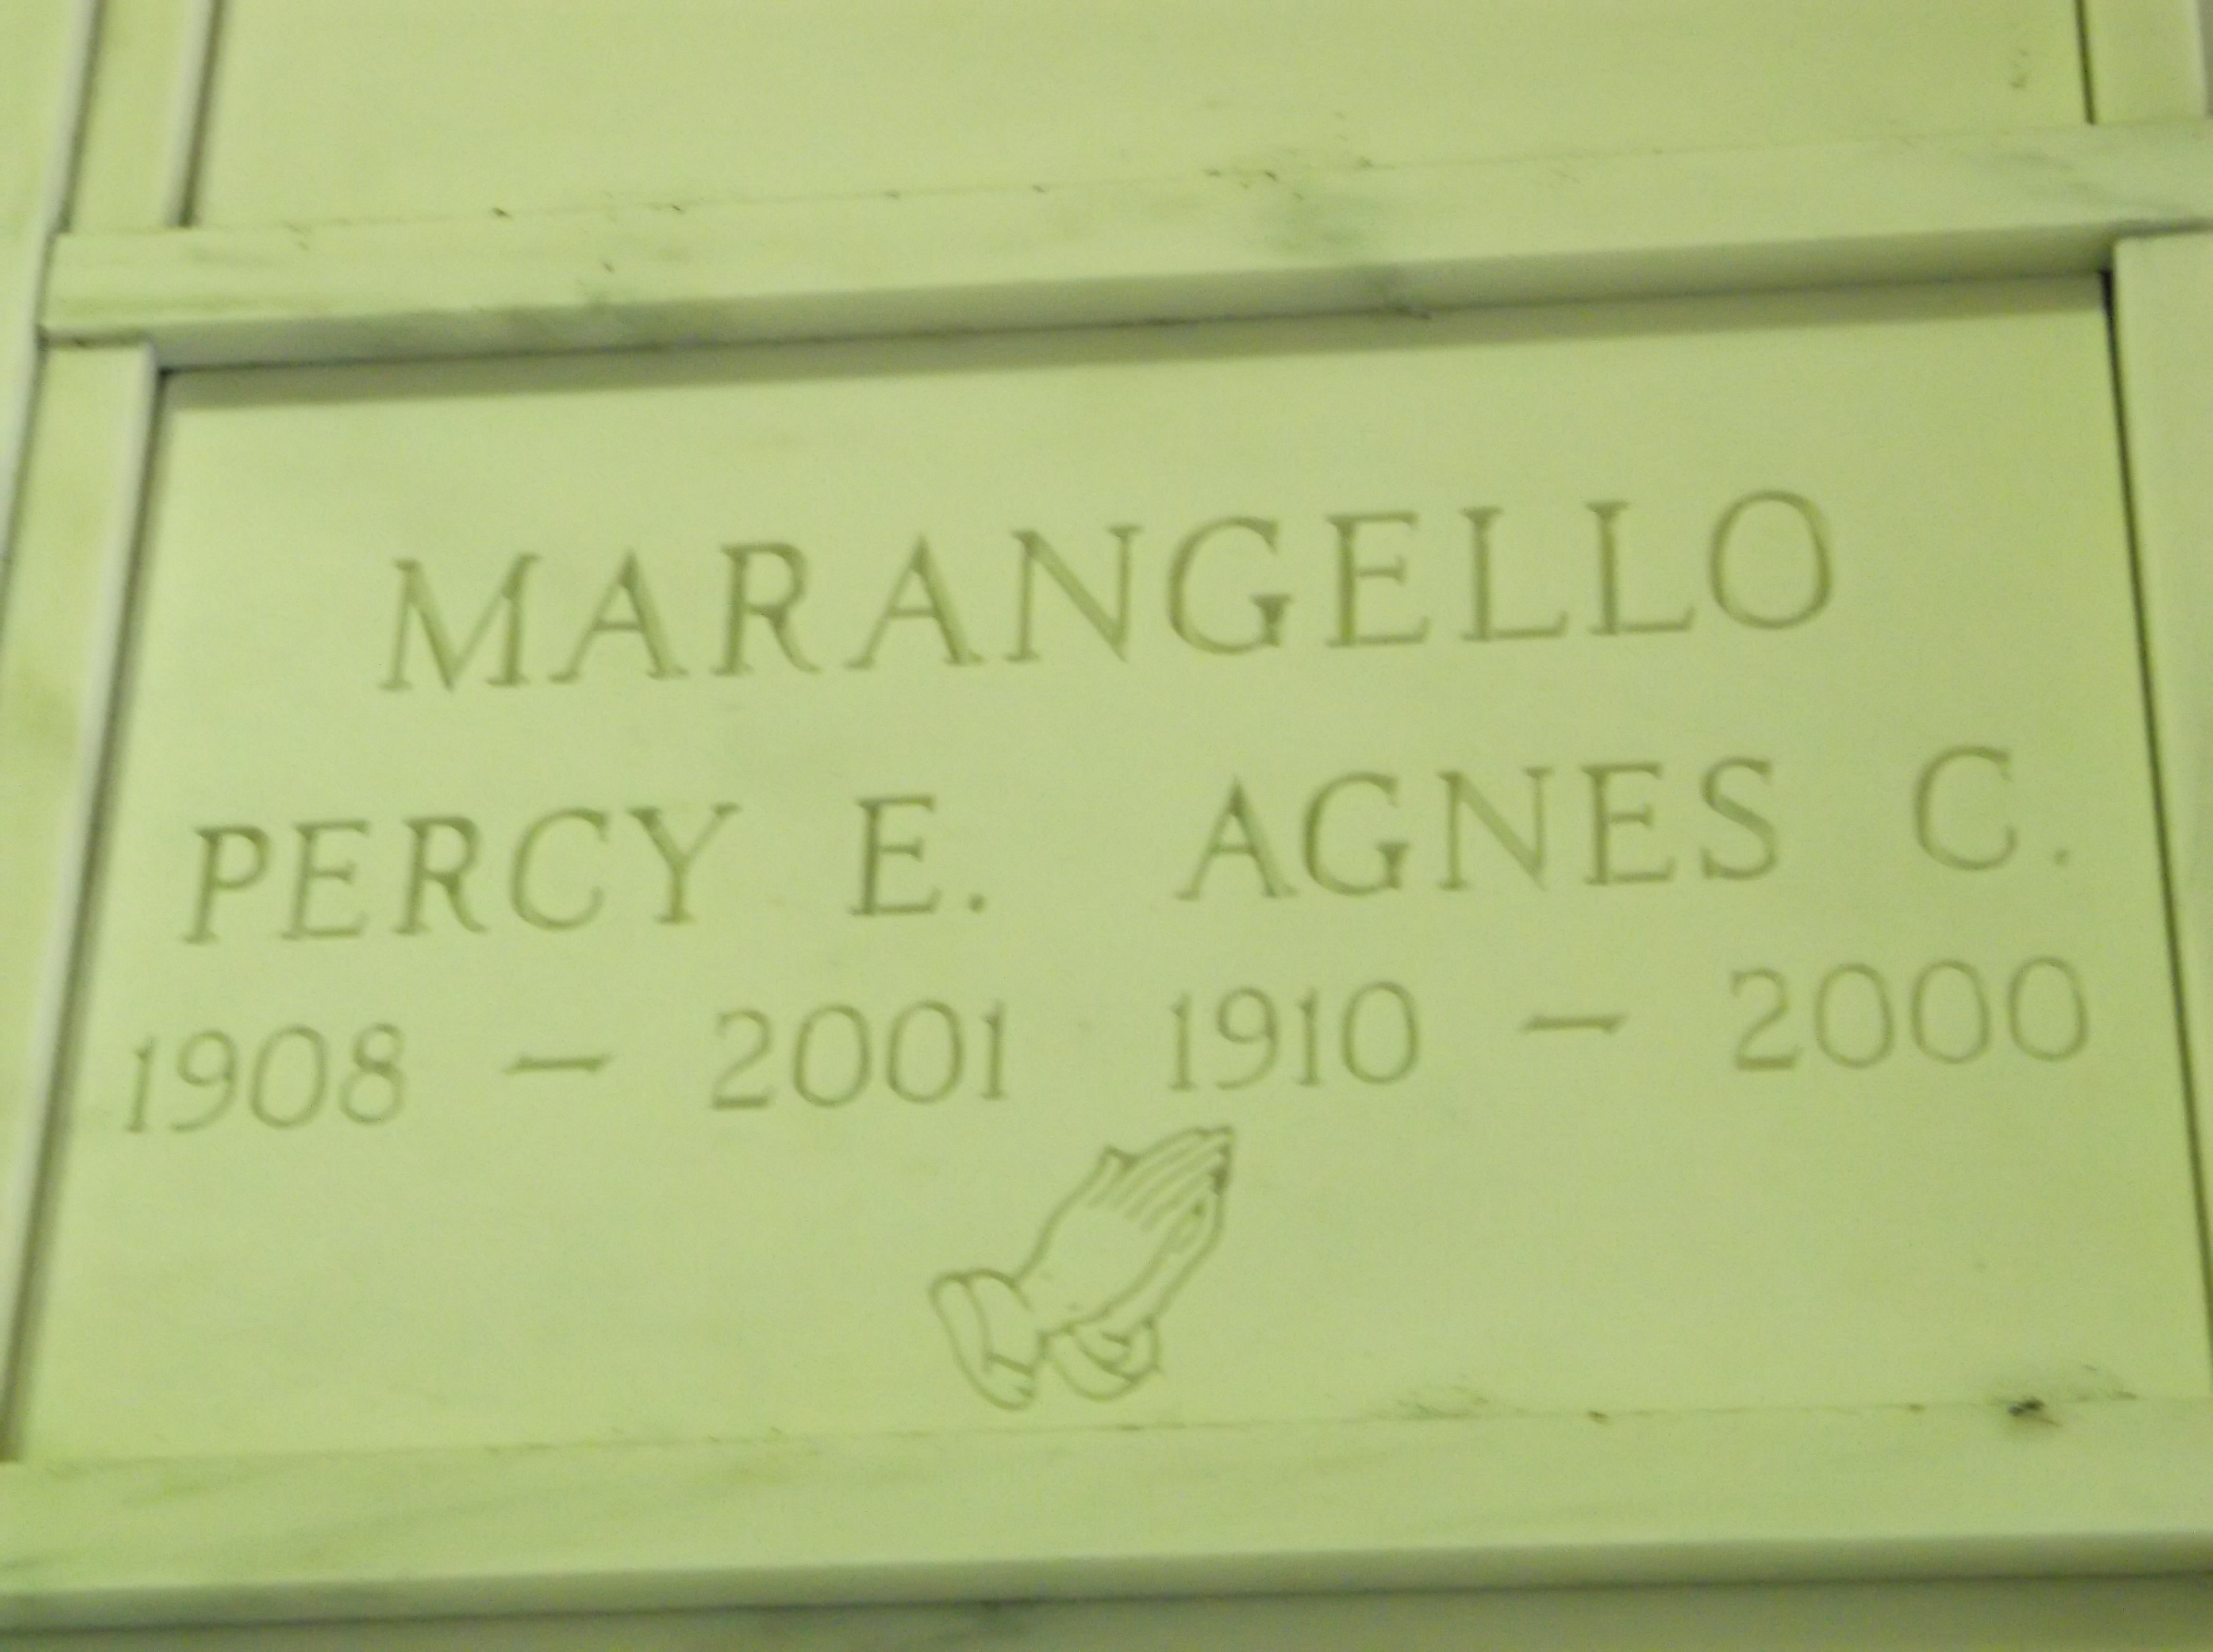 Agnes C Marangello